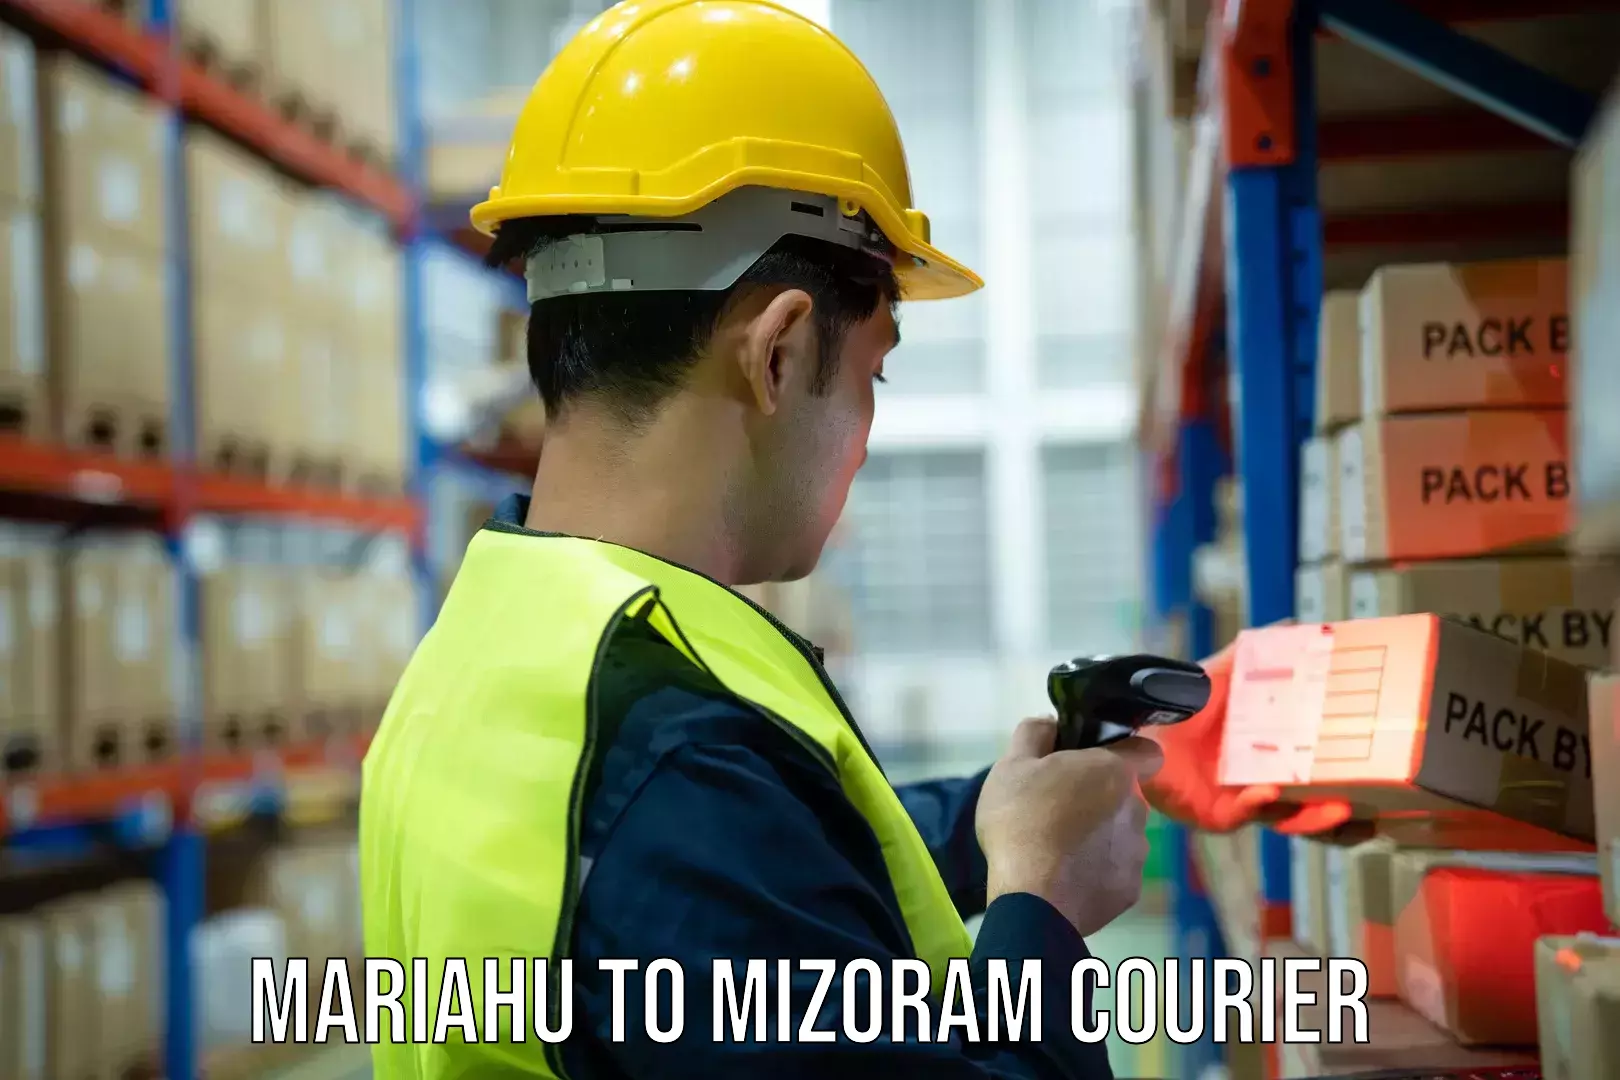 Tracking updates Mariahu to Mizoram